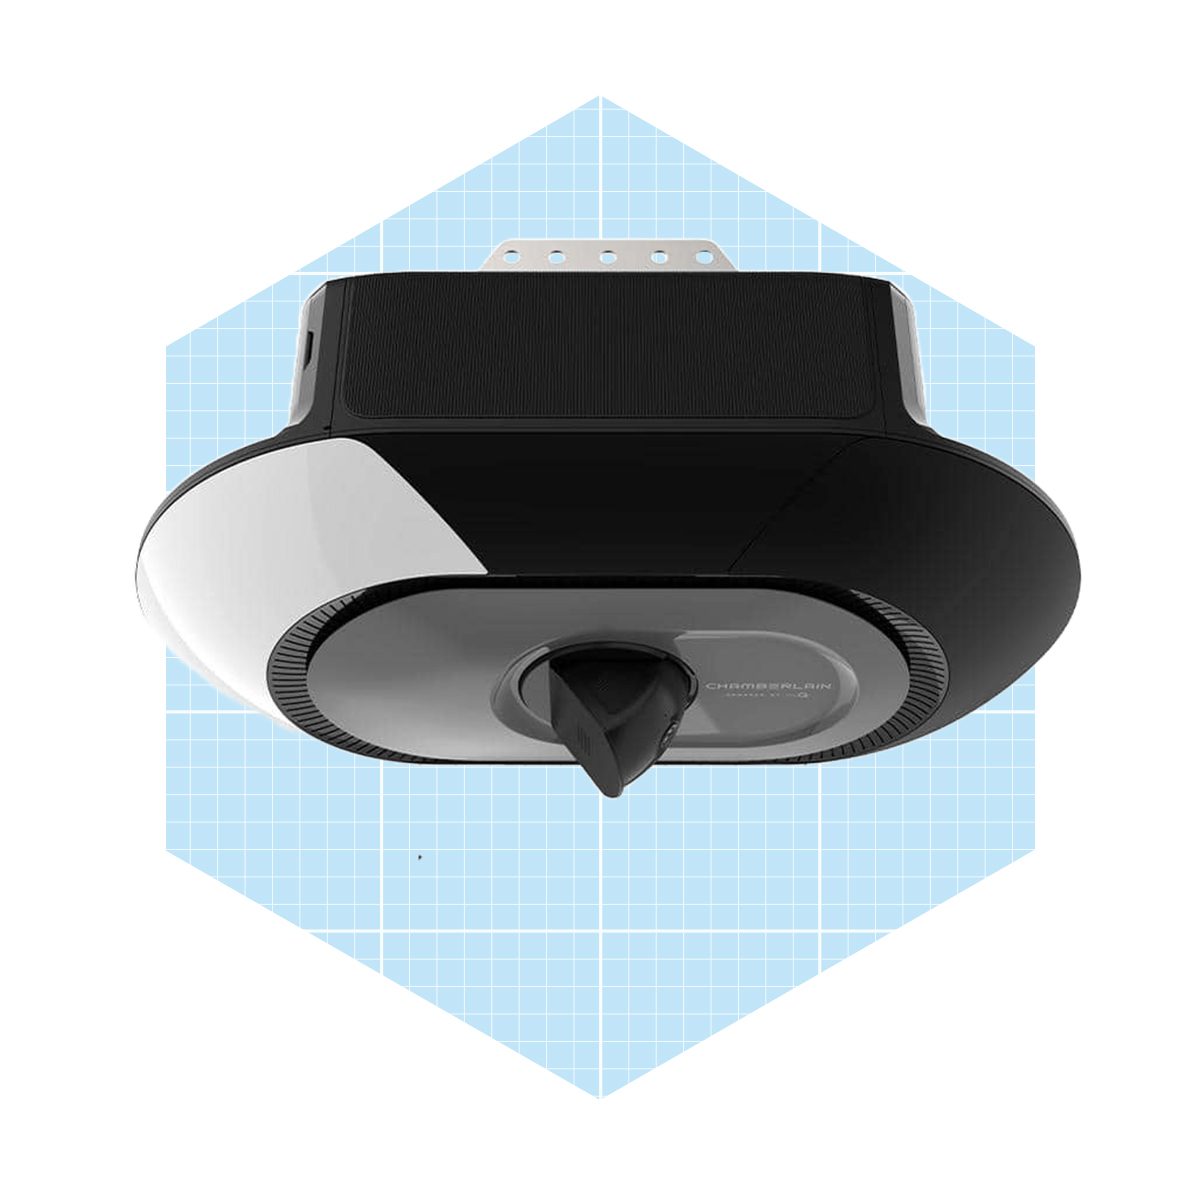 3/4 HP LED Video Quiet Belt Drive Smart Garage Door Opener with Integrated Camera